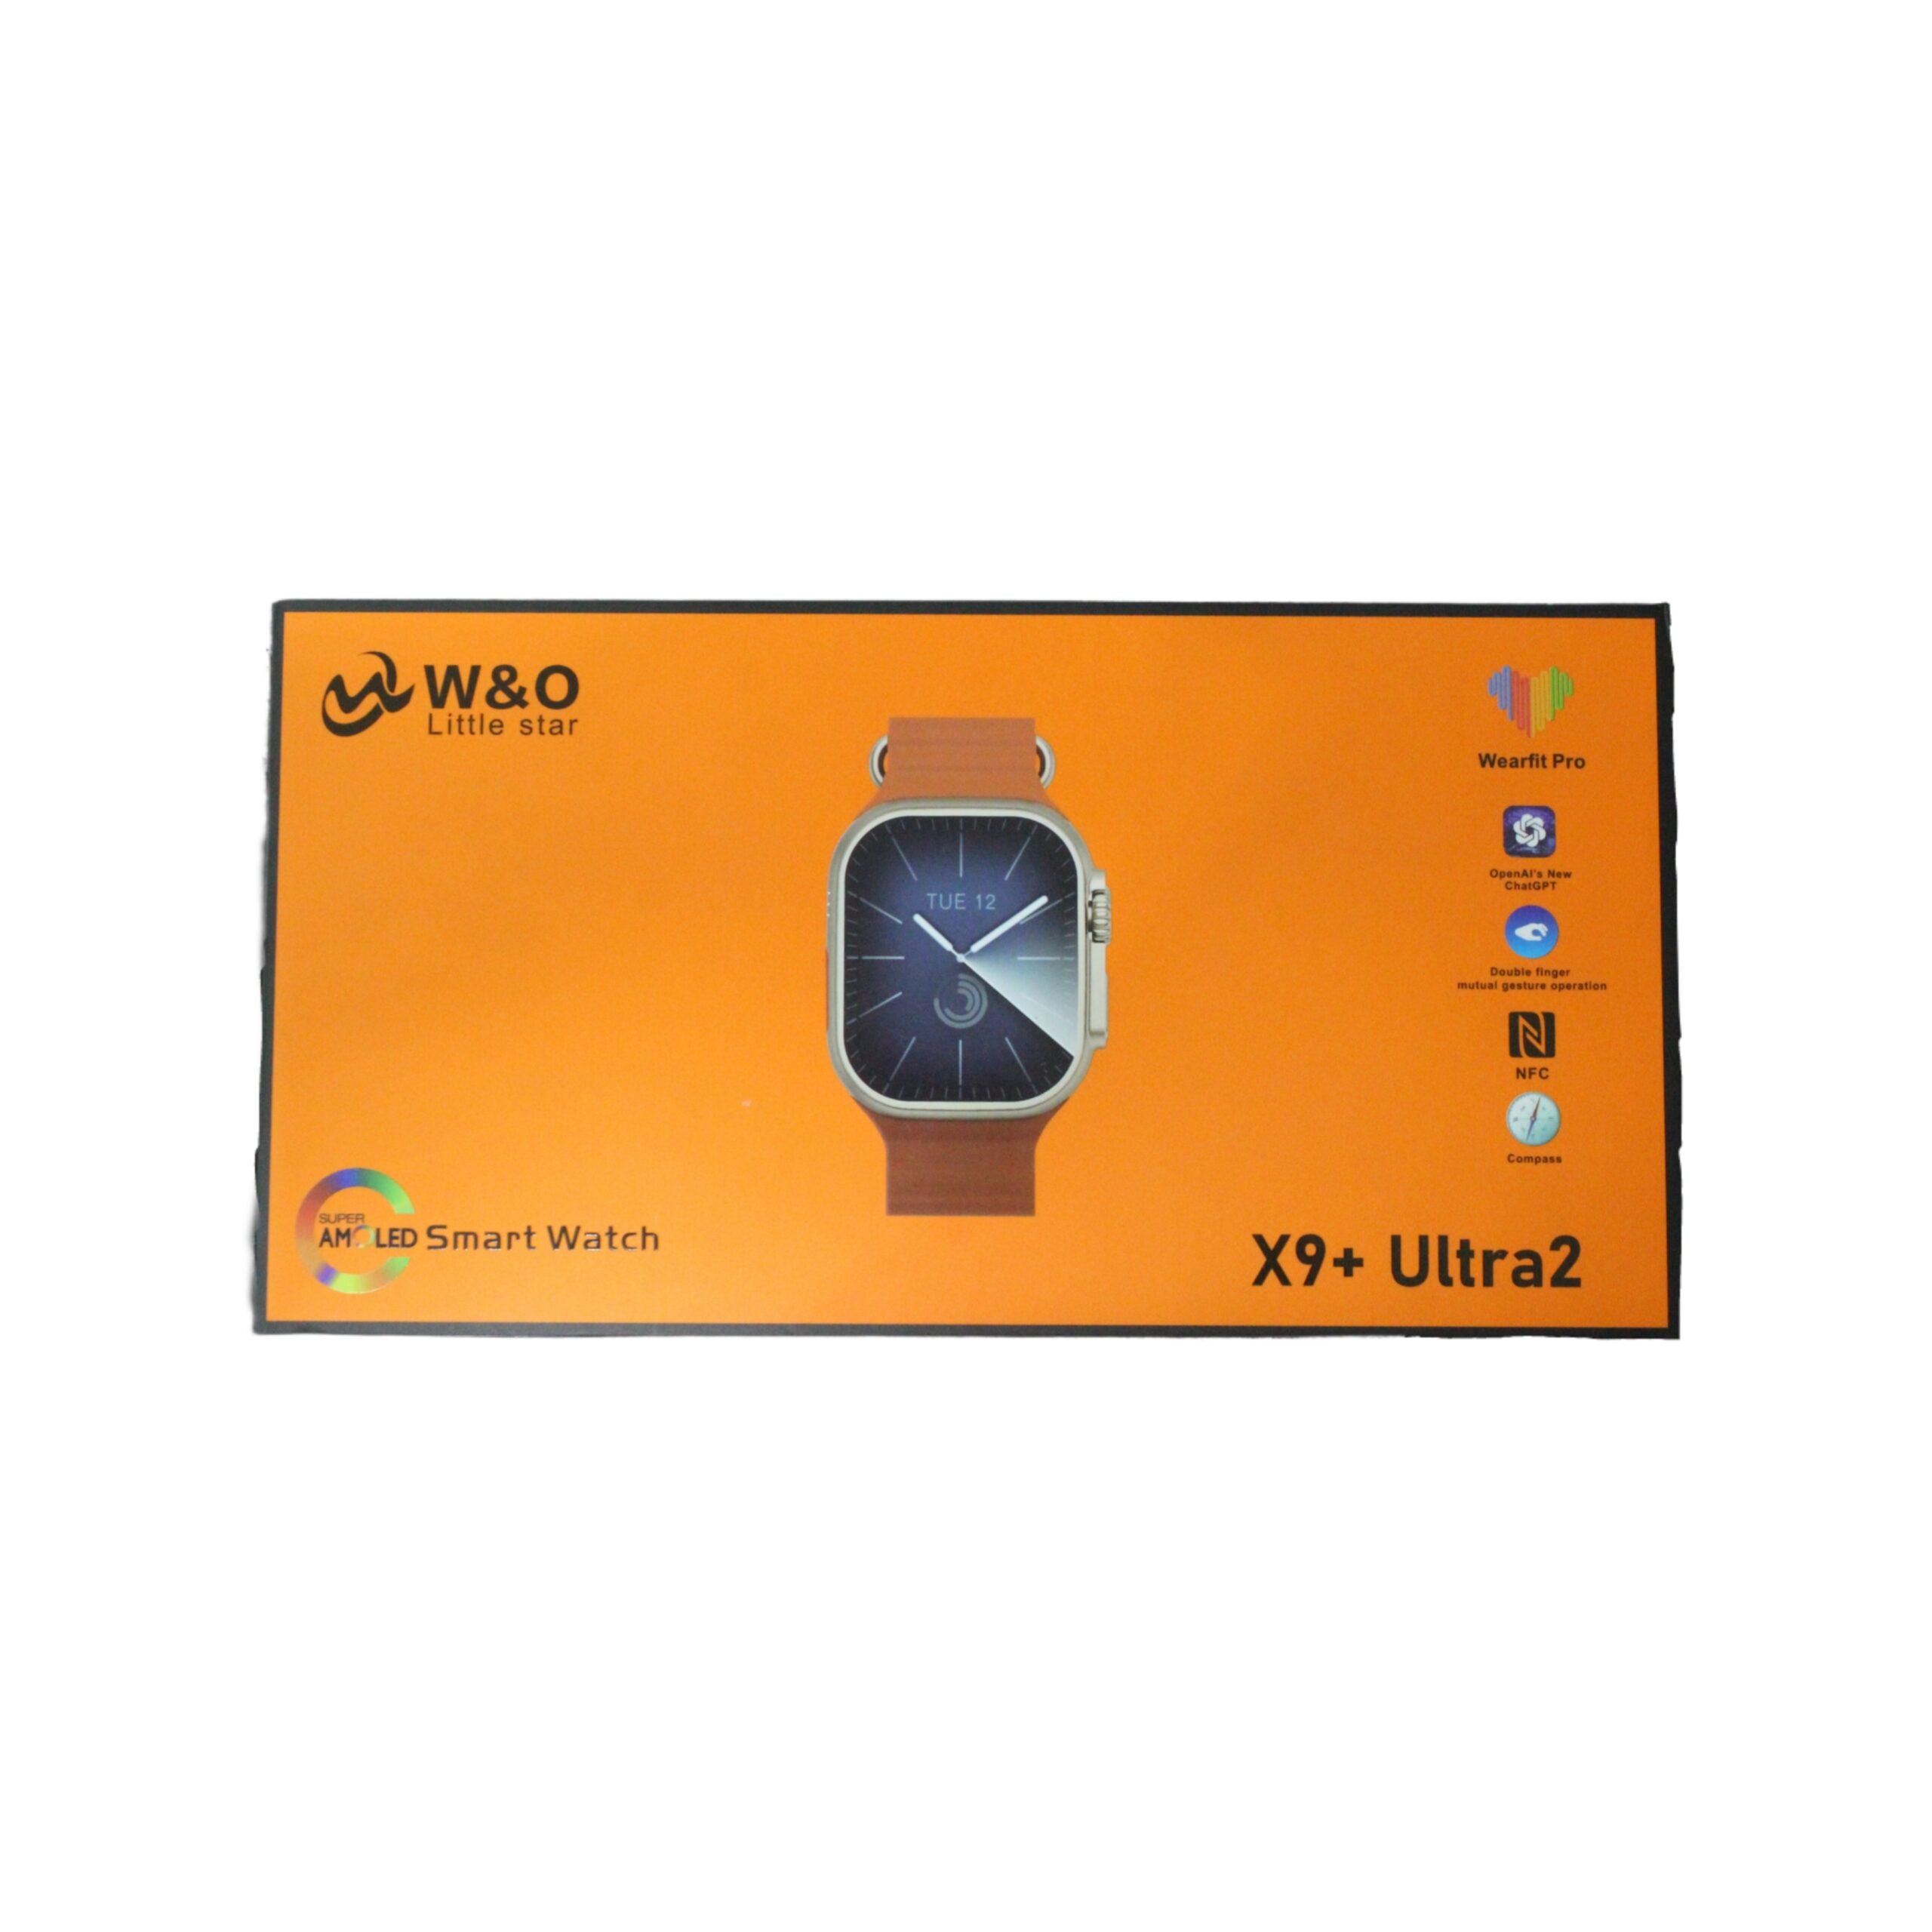 W&O X9+Ultra 2 Smart Watch - 2 Straps - eShop Now